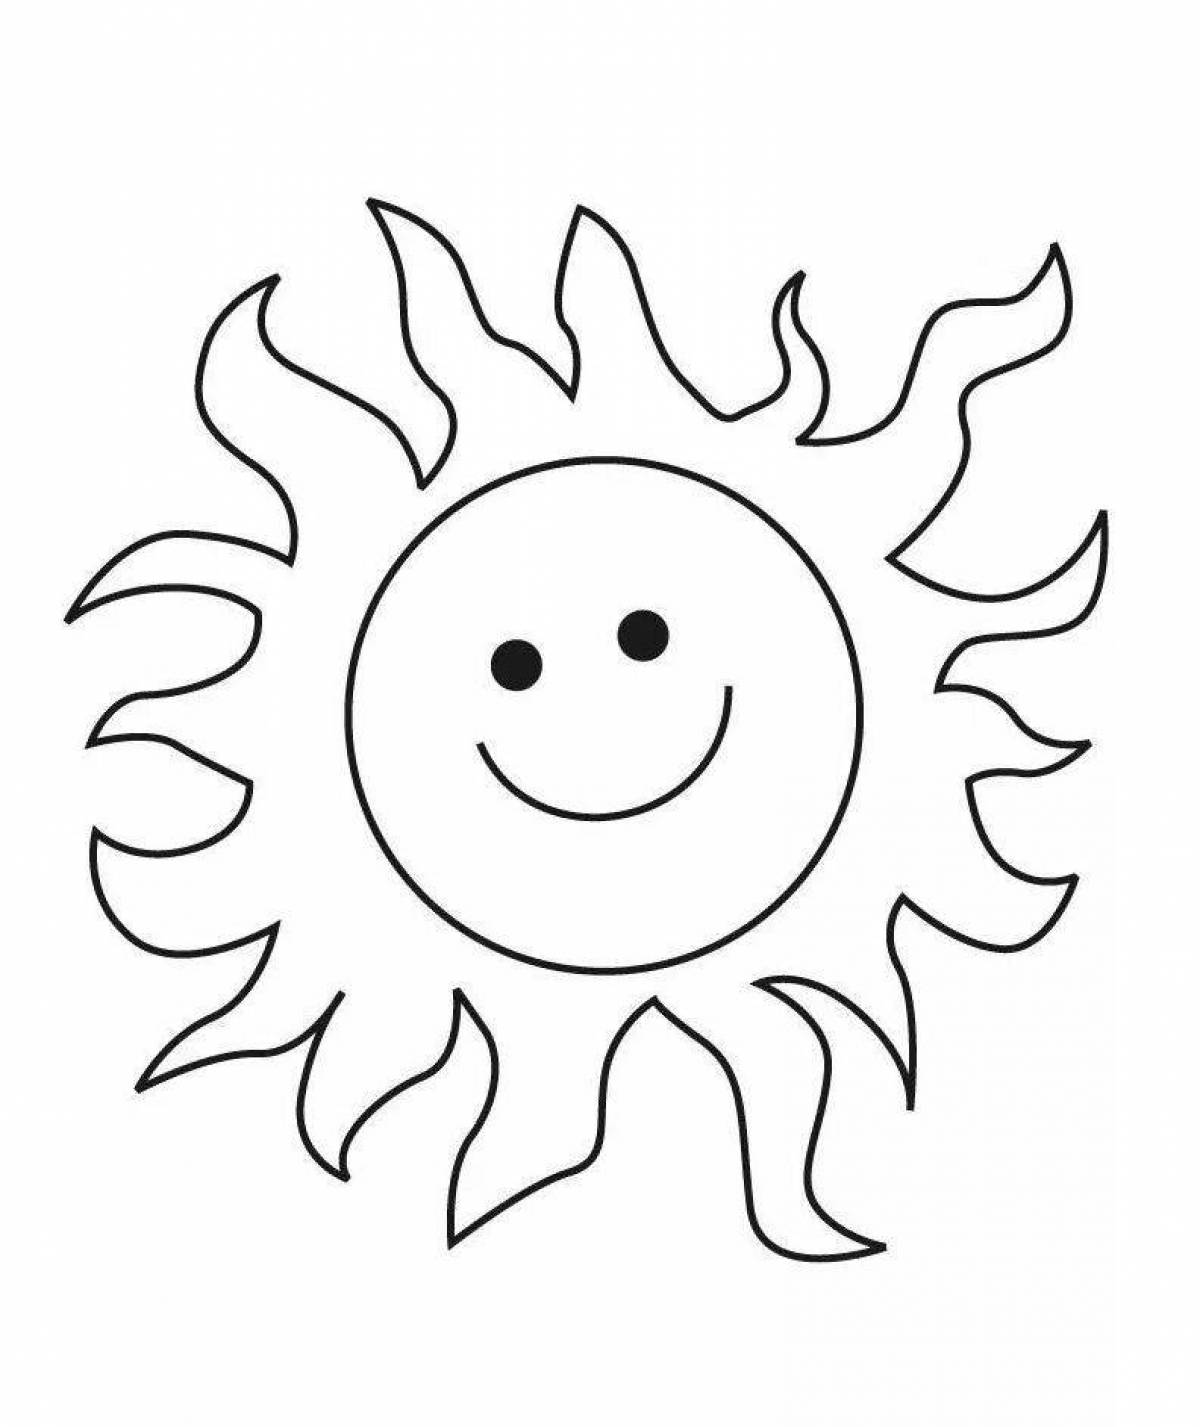 Радиантная раскраска солнце для детей 3-4 лет